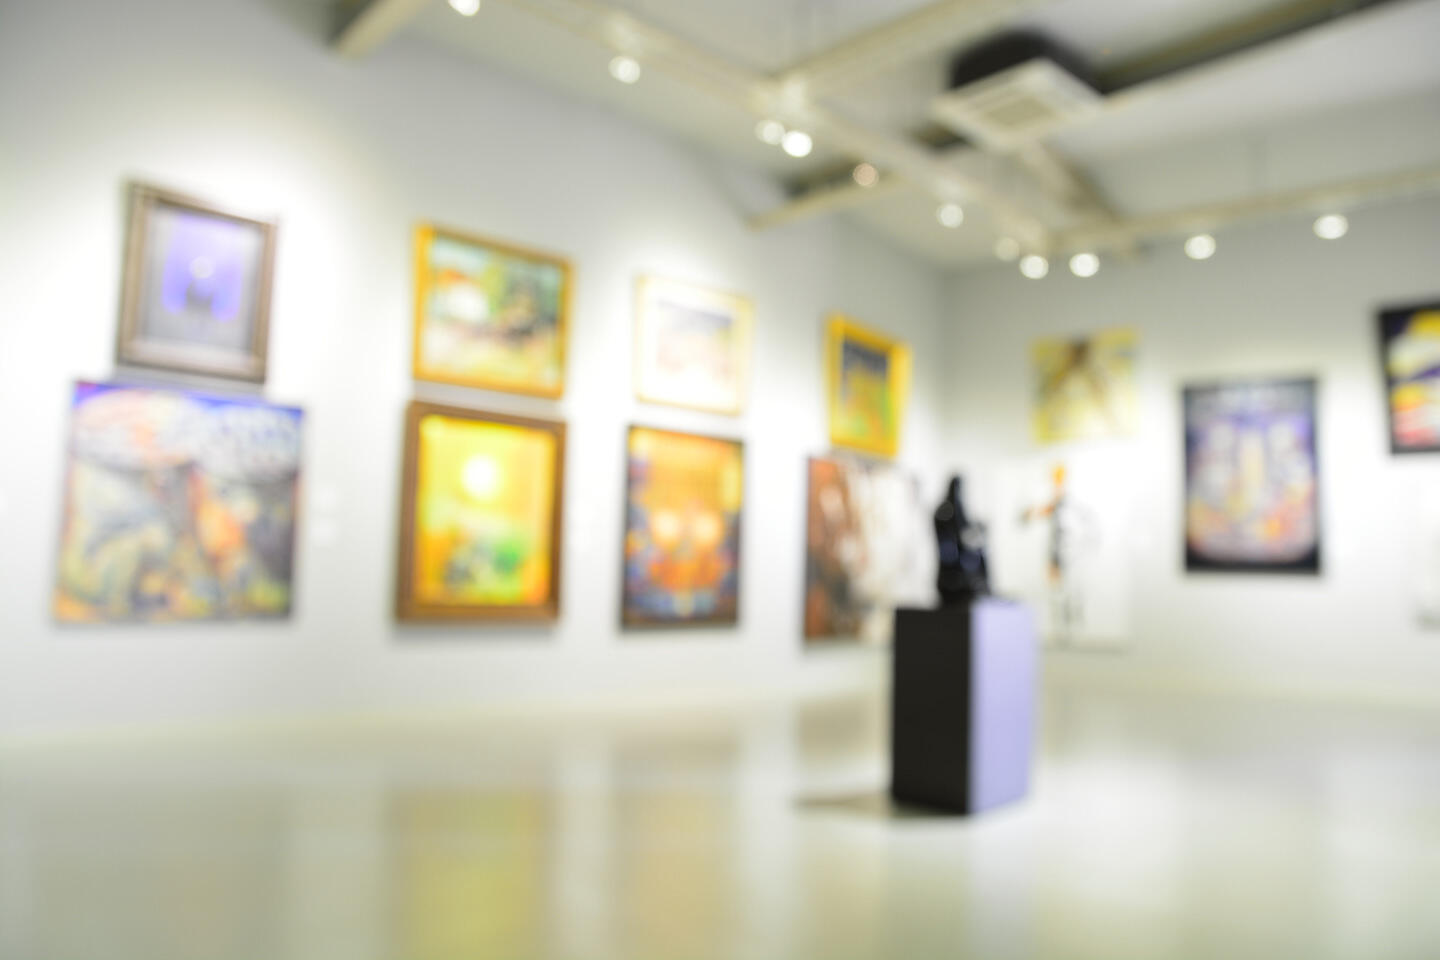 Vue intérieure floue d'une galerie d'art contemporain avec des murs ornés de tableaux colorés dans des cadres variés et une sculpture sur piédestal au centre, créant une atmosphère artistique immersive et dynamique.